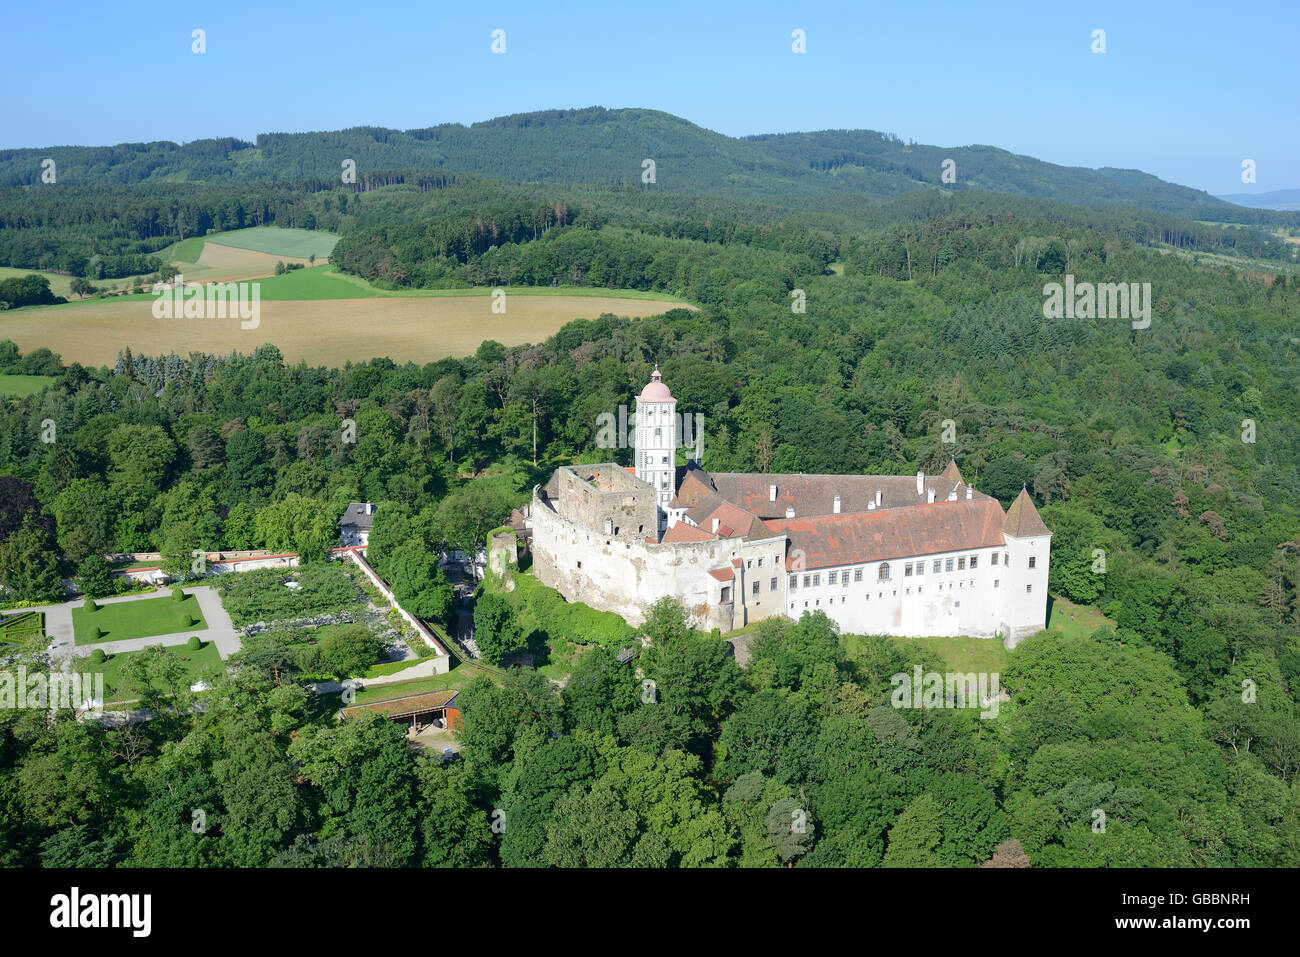 LUFTAUFNAHME. Renaissanceschloss von Schallaburg. Bezirk Melk, Niederösterreich, Österreich. Stockfoto